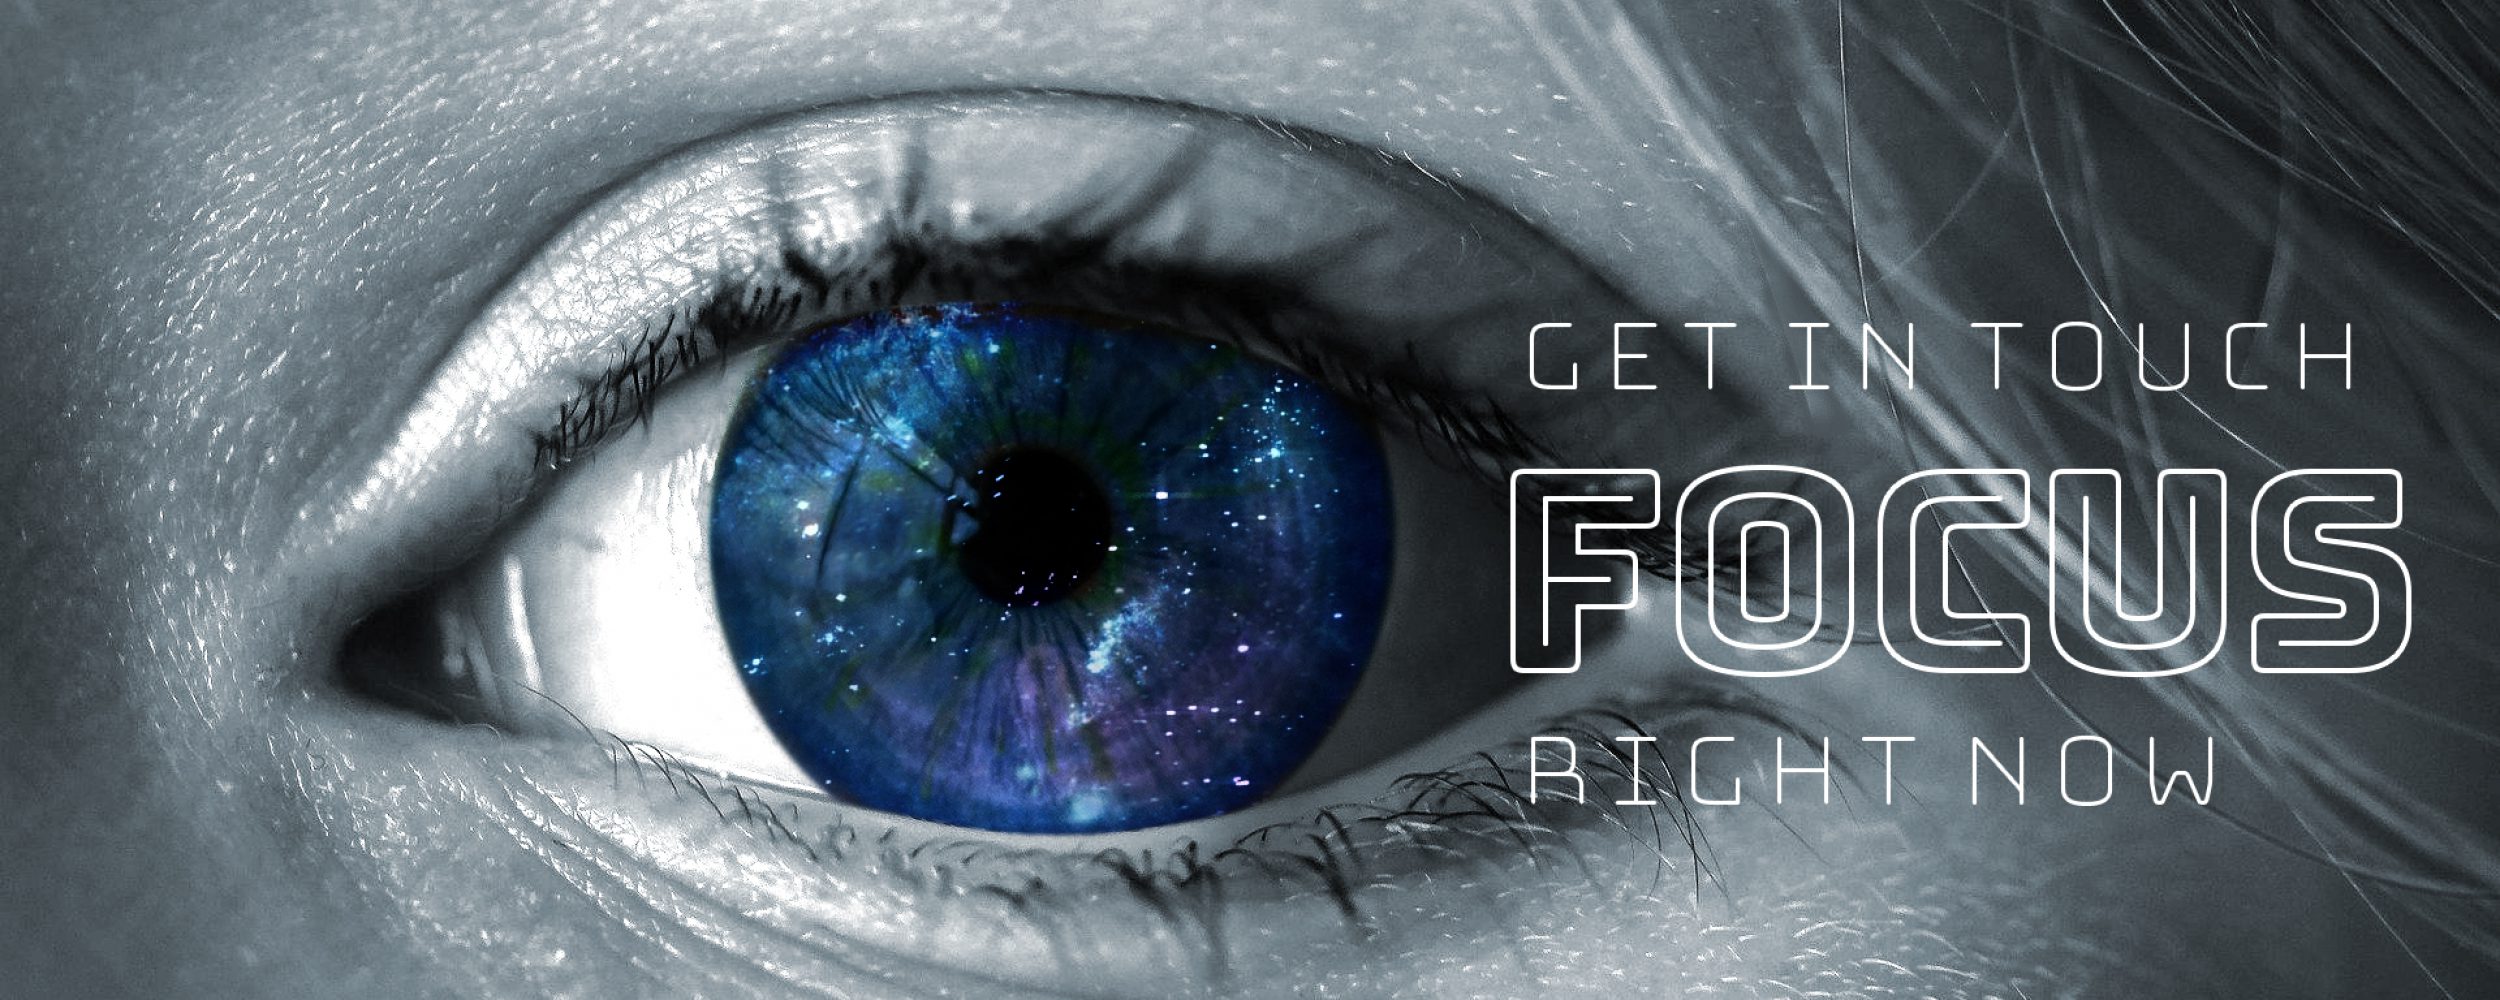 Mood-Picture, Abbildung Ausschnitt Auge einer Frau, Bildbearbeitung Schwarz-Weiß mit blauer Galaxis innerhalb des Auges